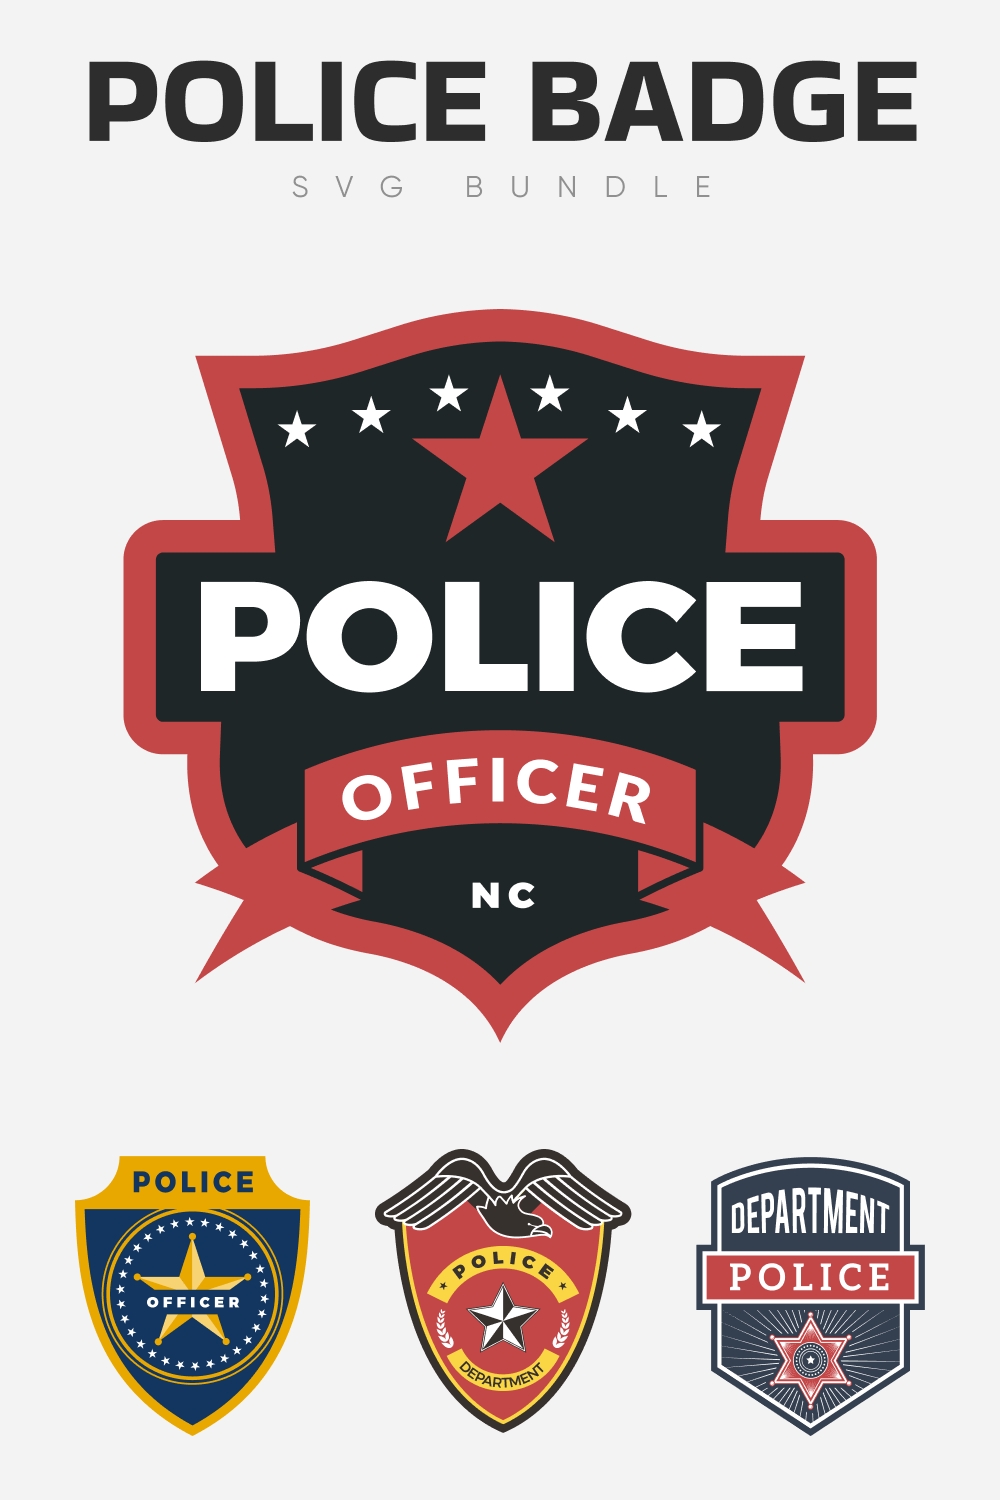 Police badge SVG bundle.